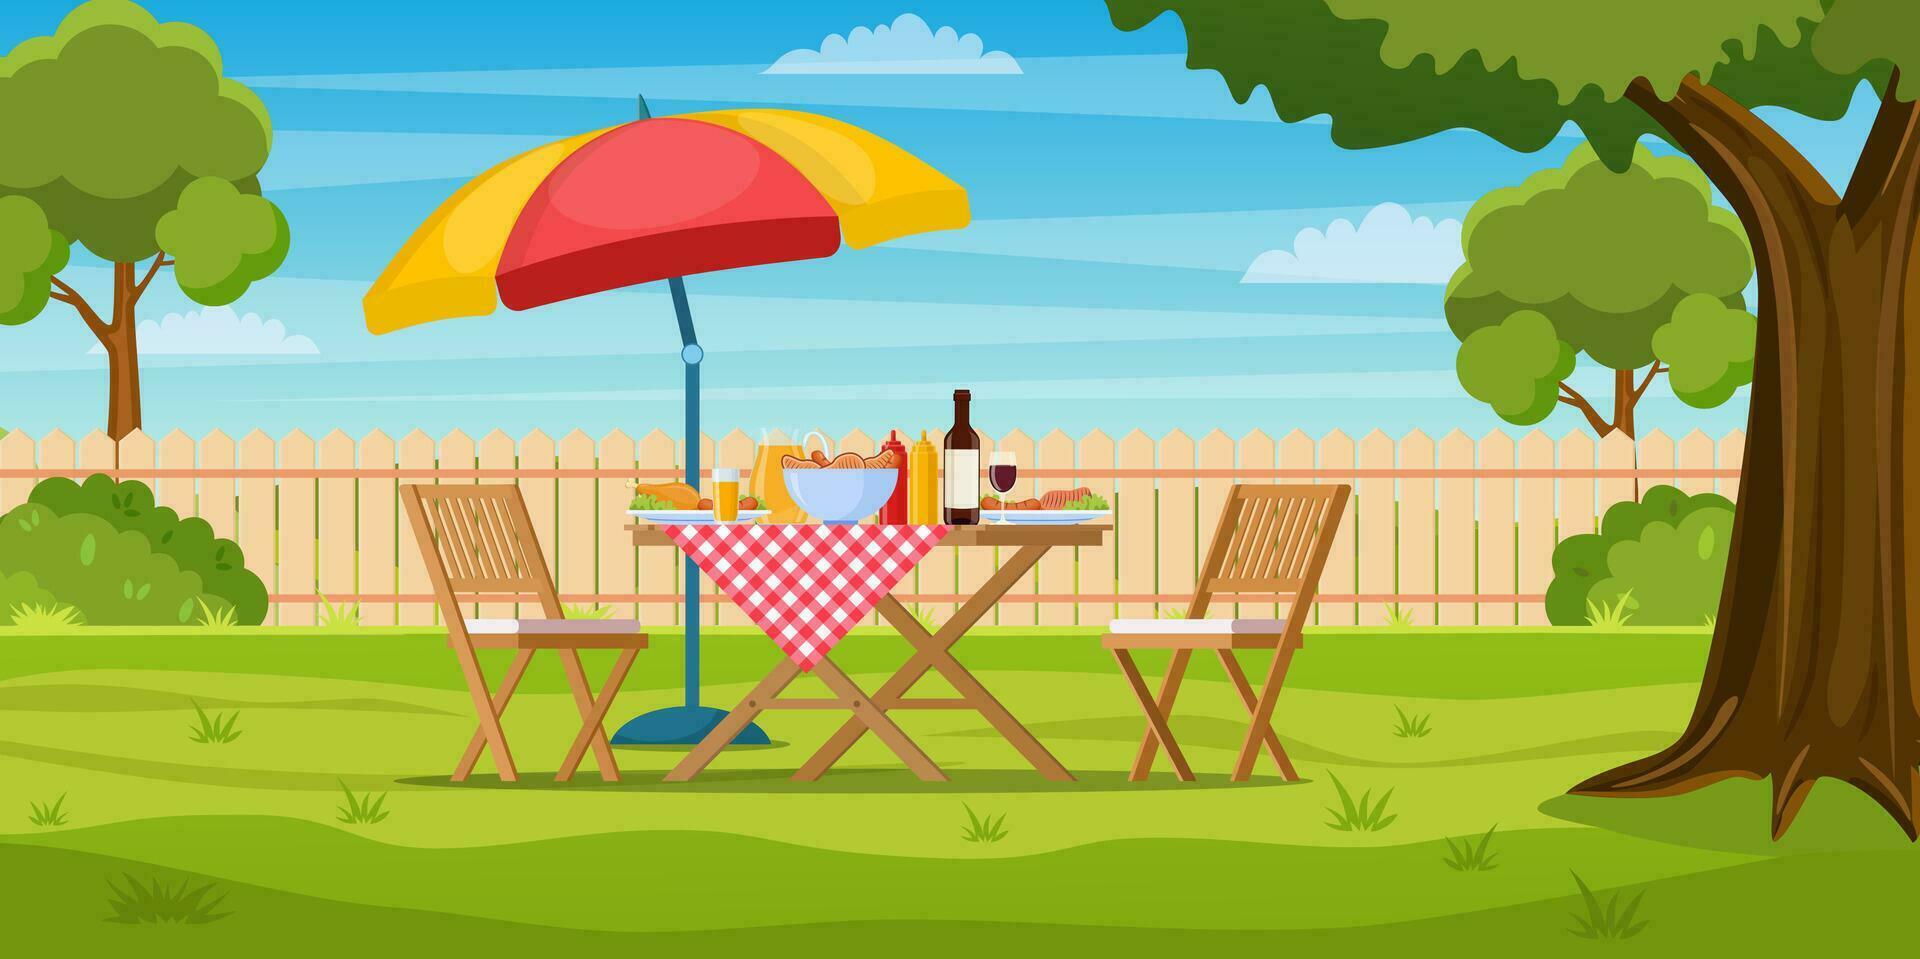 utegrill fest i de bakgård med staket, träd, buskar. picknick med utegrill på sommar gräsmatta i parkera eller trädgård mat på tabell, stolar och paraply. vektor illustration i platt design